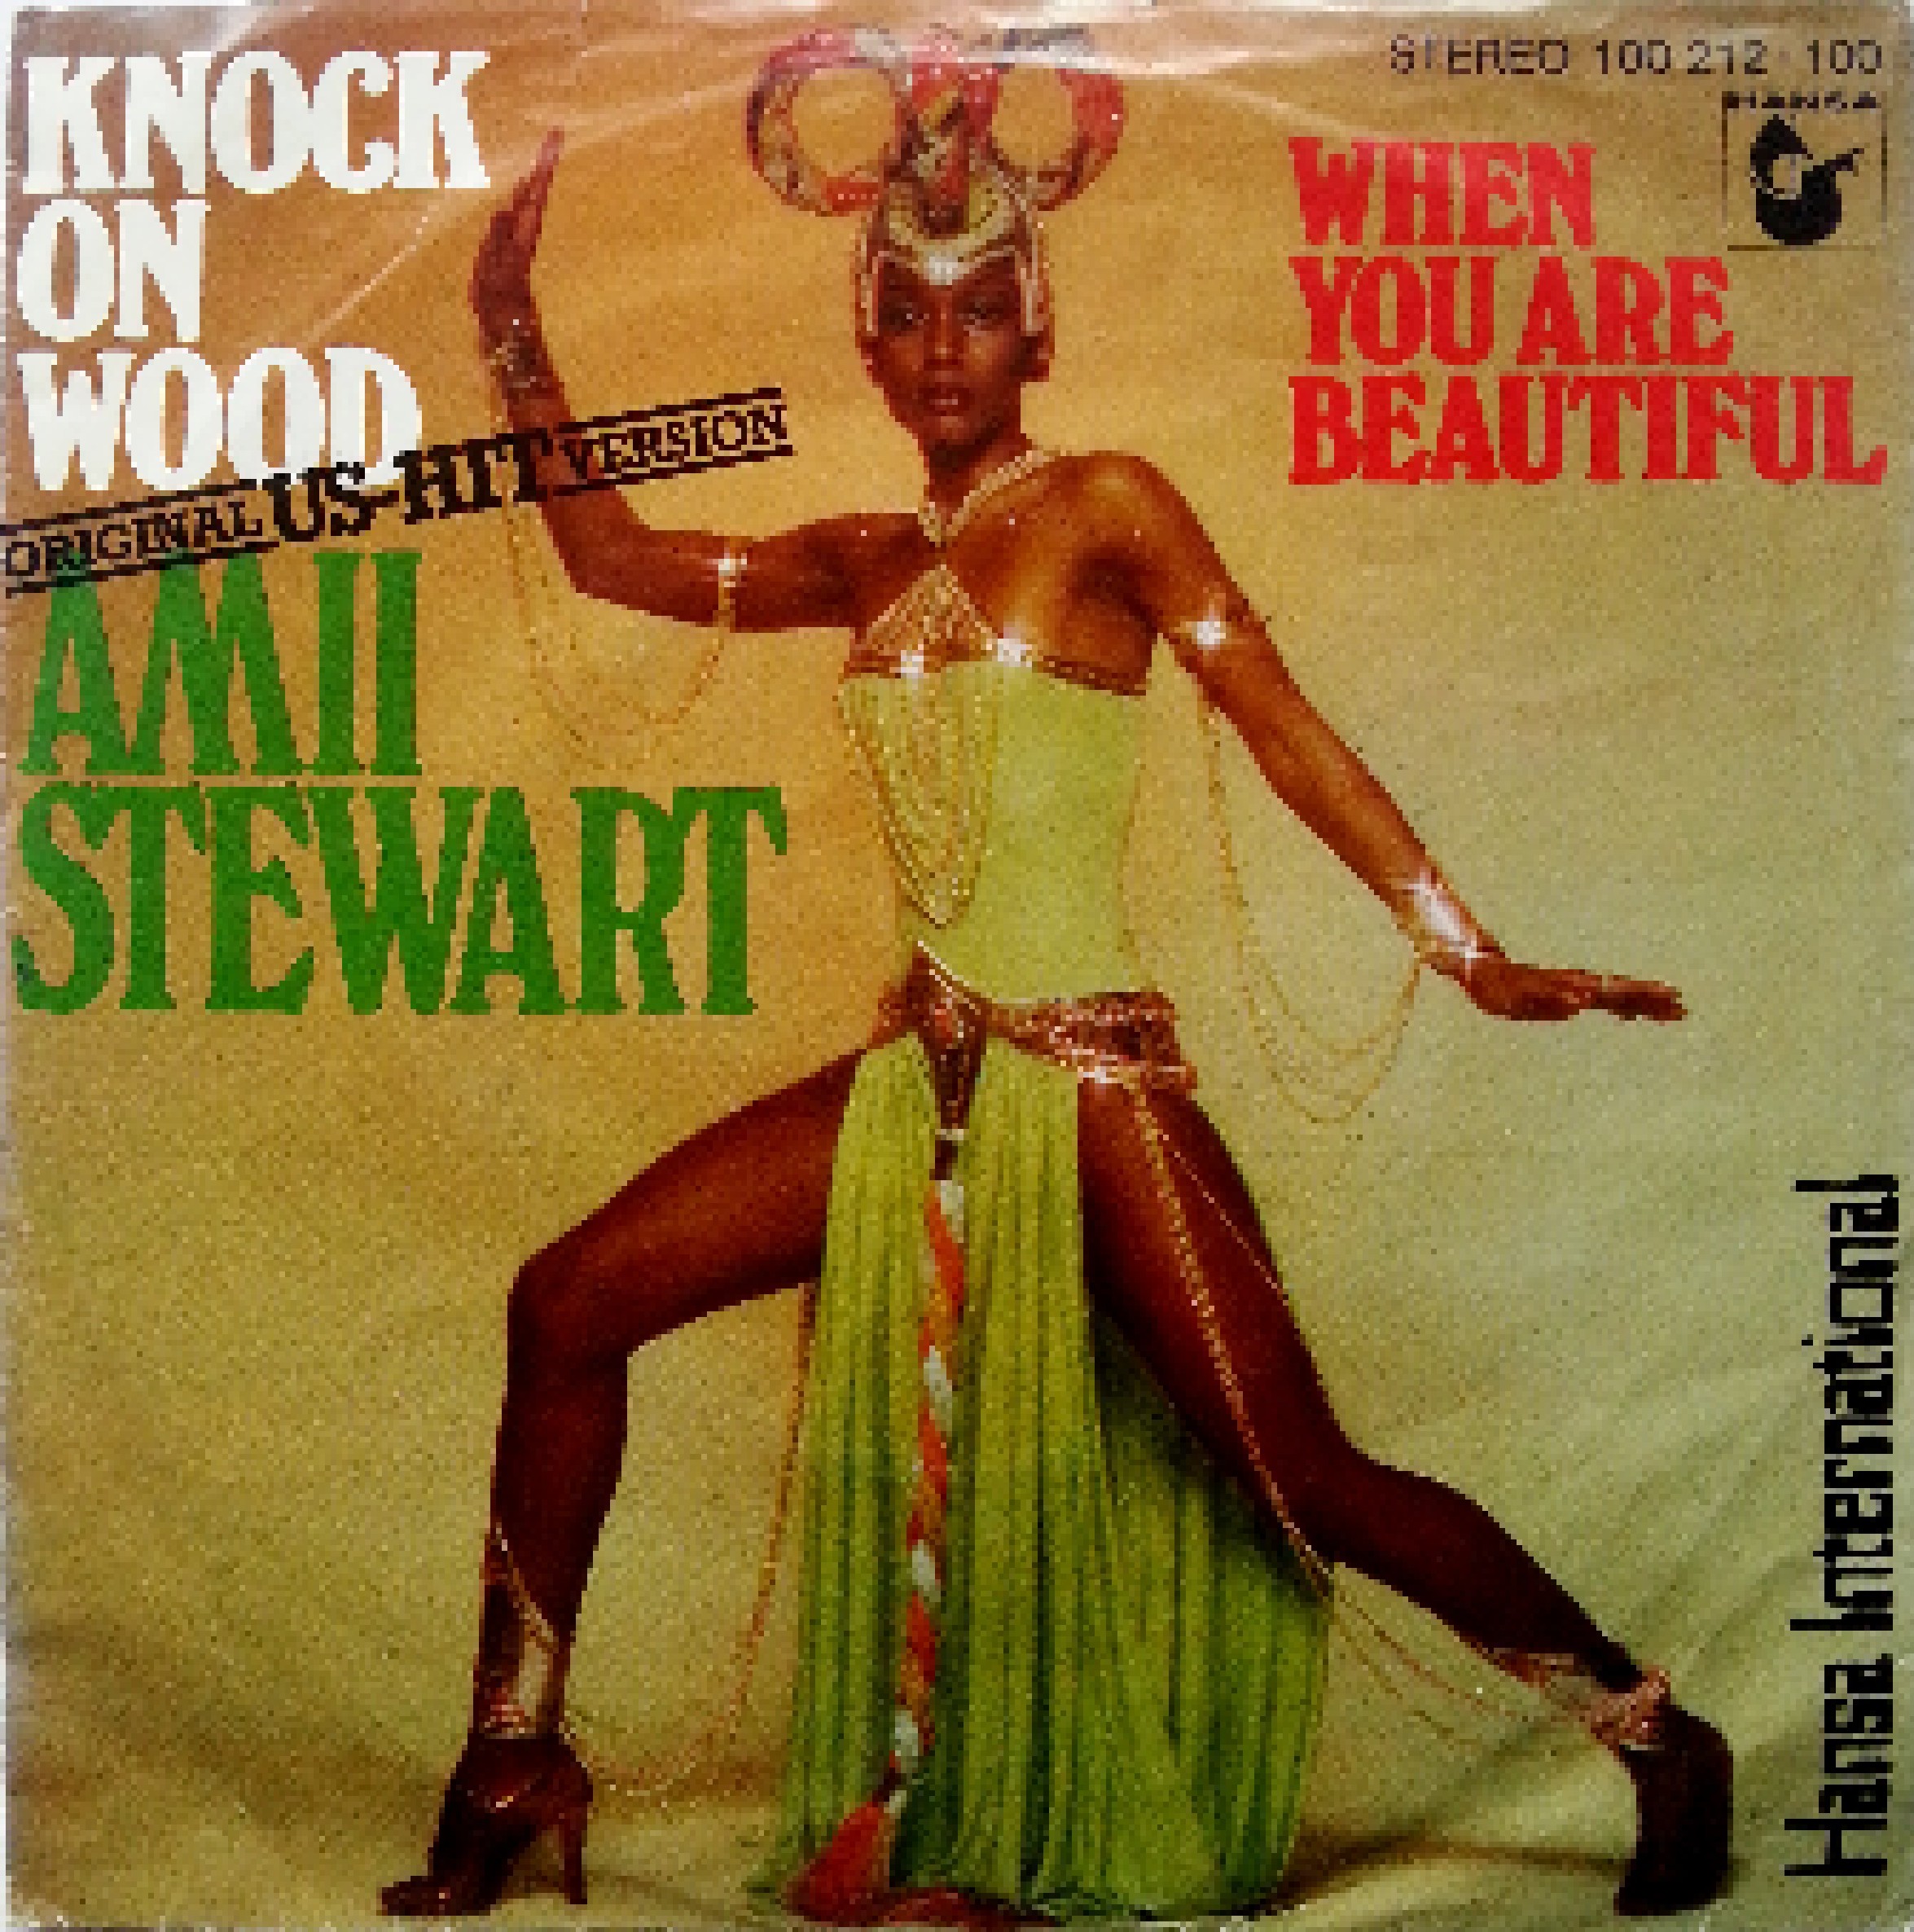 amii stewart knock on wood